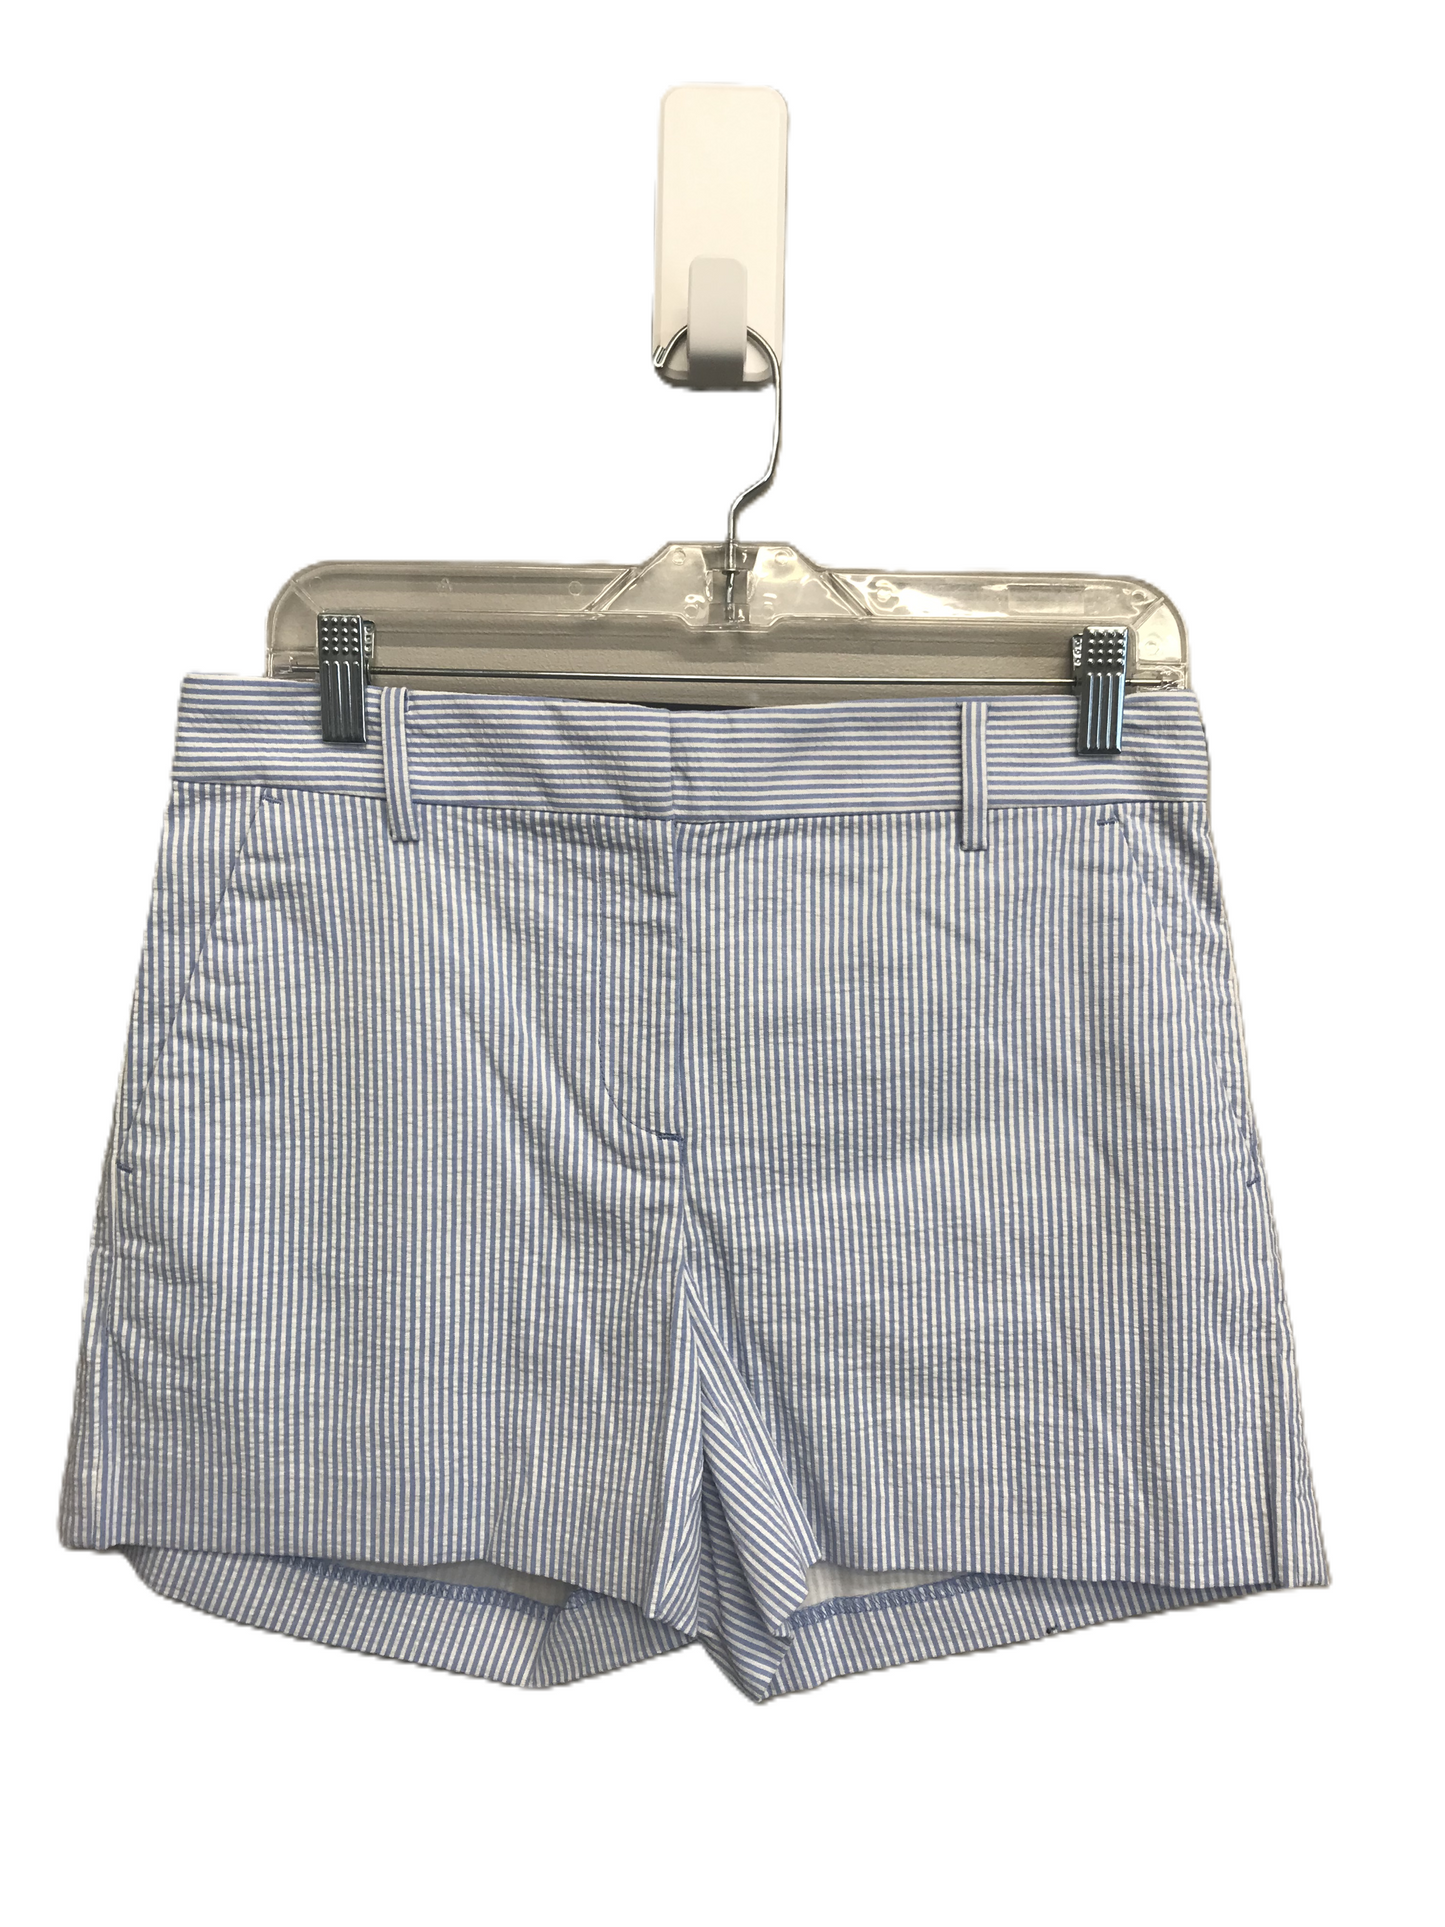 Striped Pattern Shorts By Loft, Size: 2